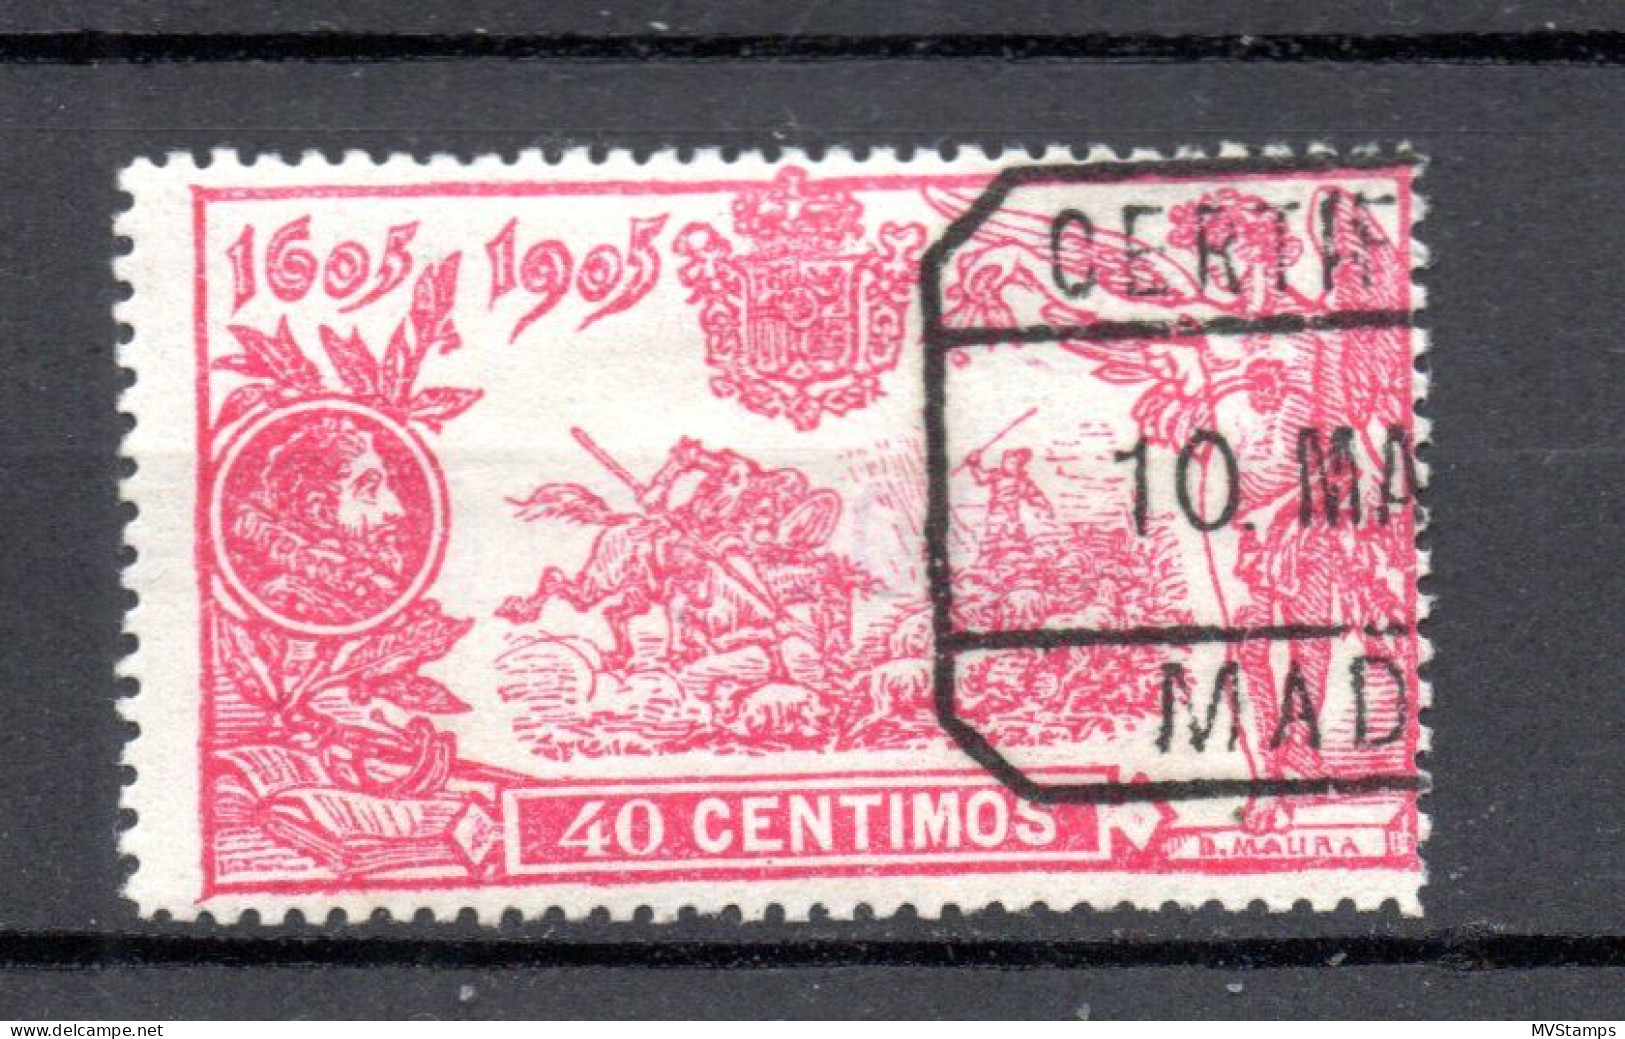 Spanien 1905 Freimarke 225 Don Quijote 40 Centimos Gebraucht - Usados